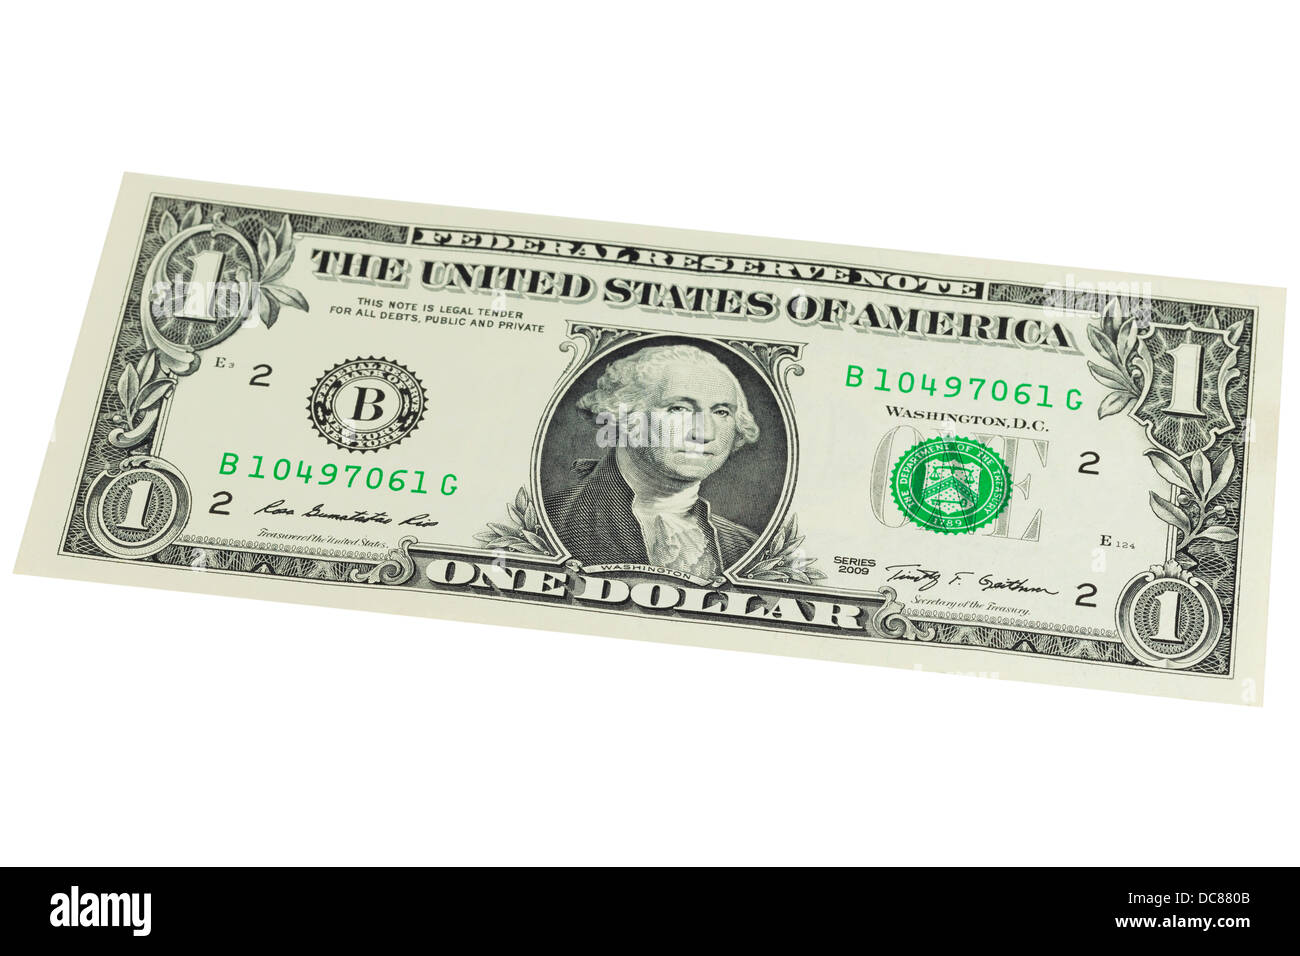 Un dollar américain note sur un fond blanc Banque D'Images